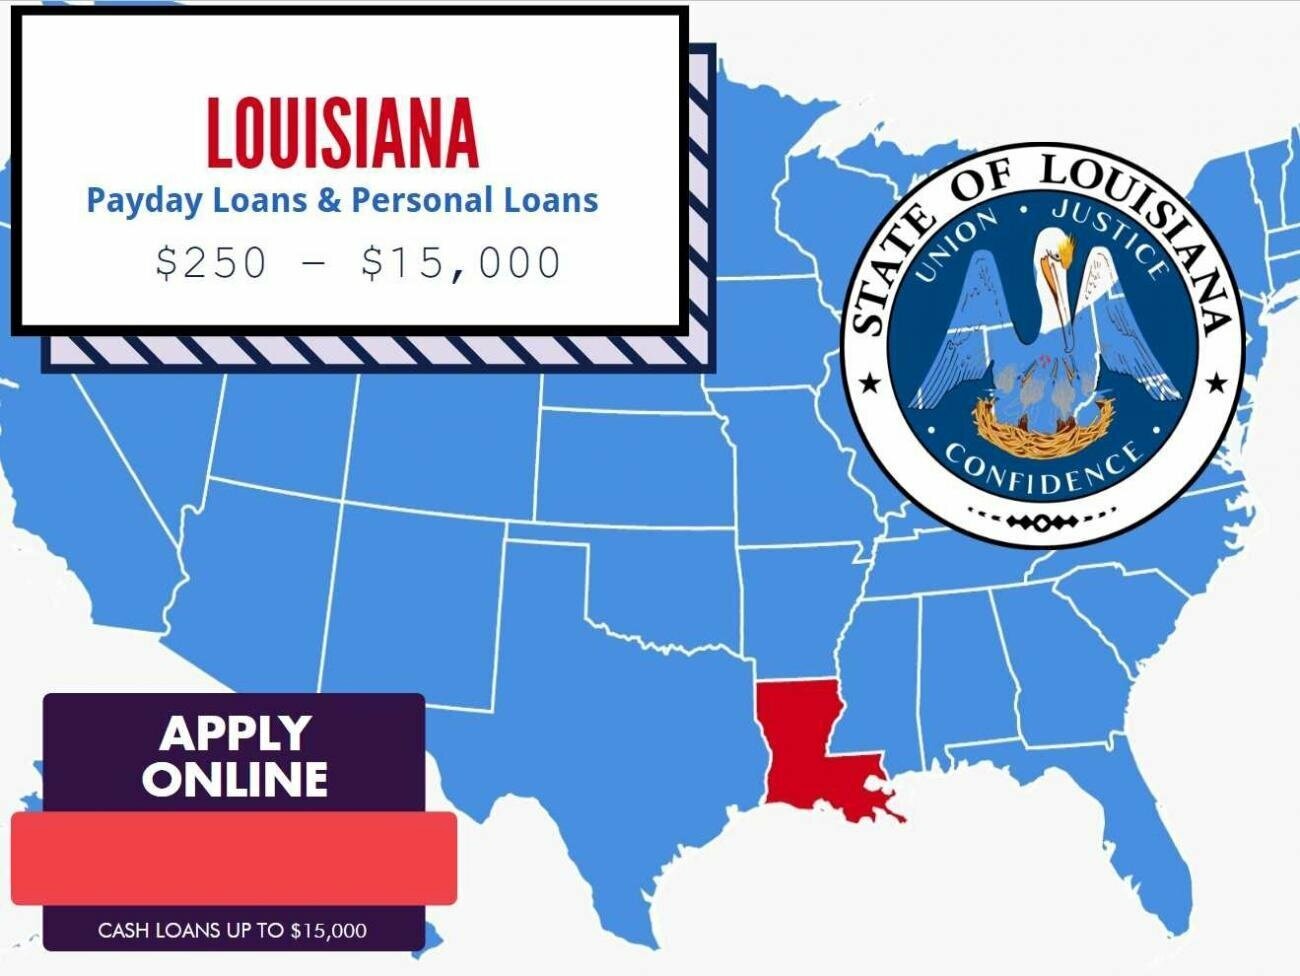 Louisiana CASH ADVANCE - Payday Loans & Personal Loans